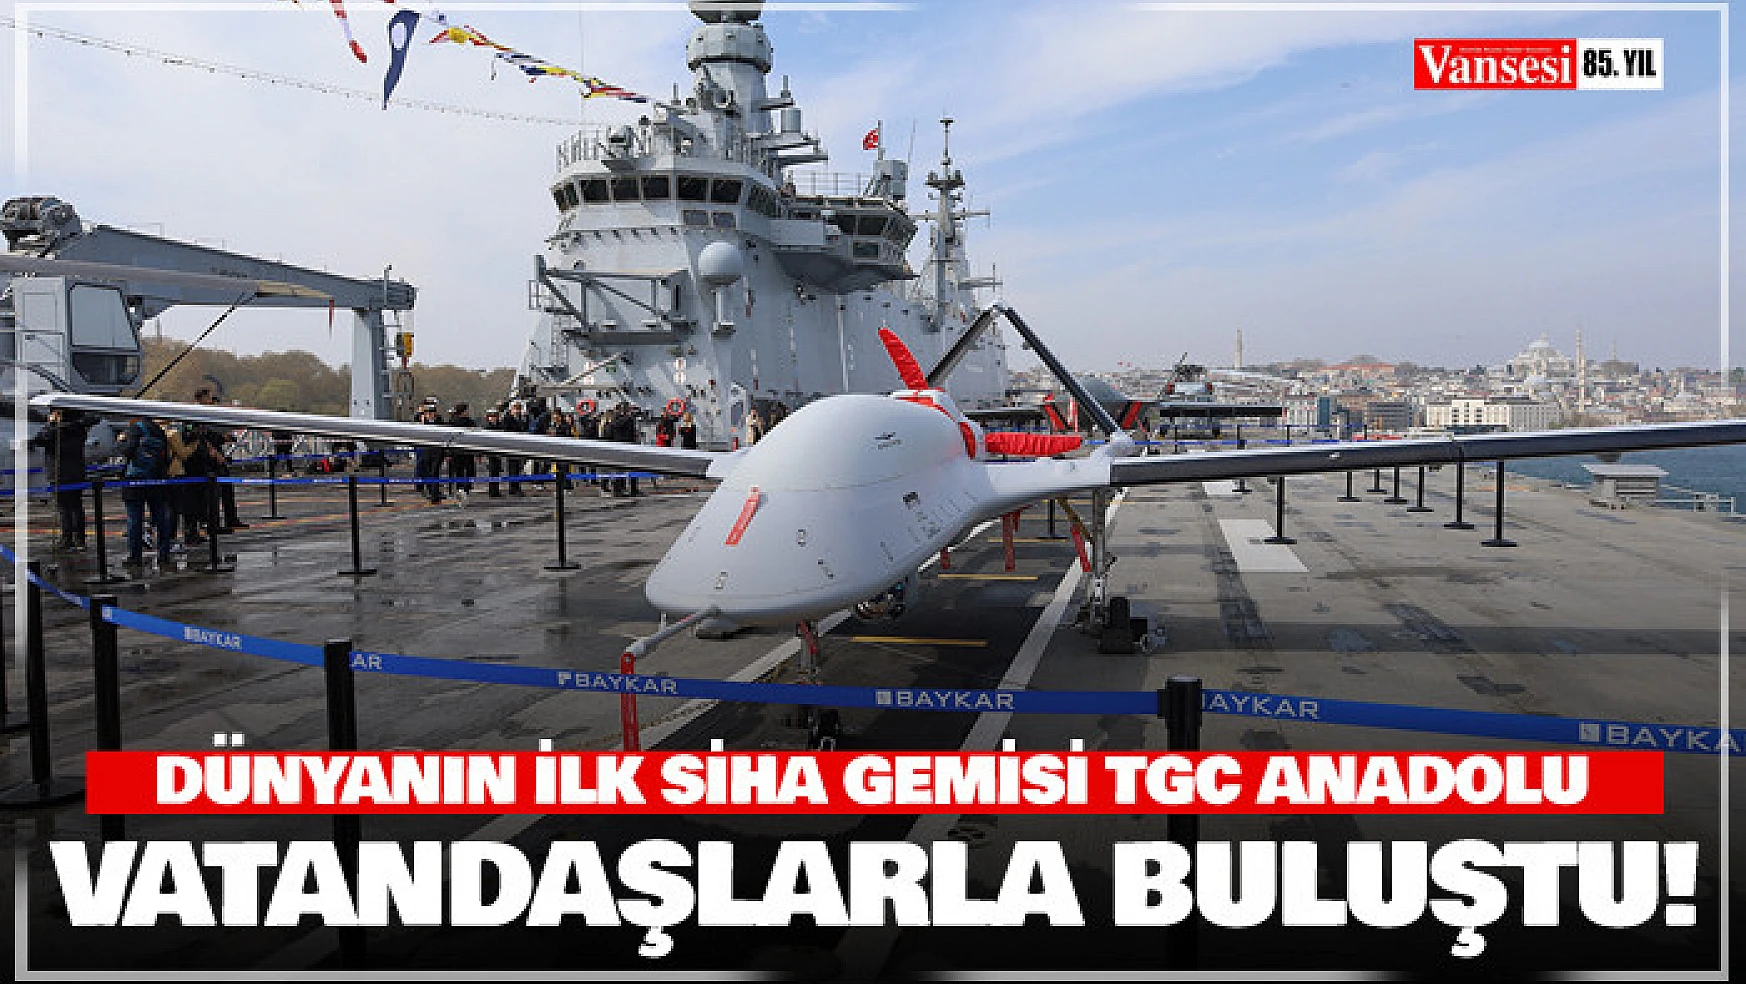 Dünyanın ilk SİHA gemisi TCG Anadolu vatandaşlarla buluştu